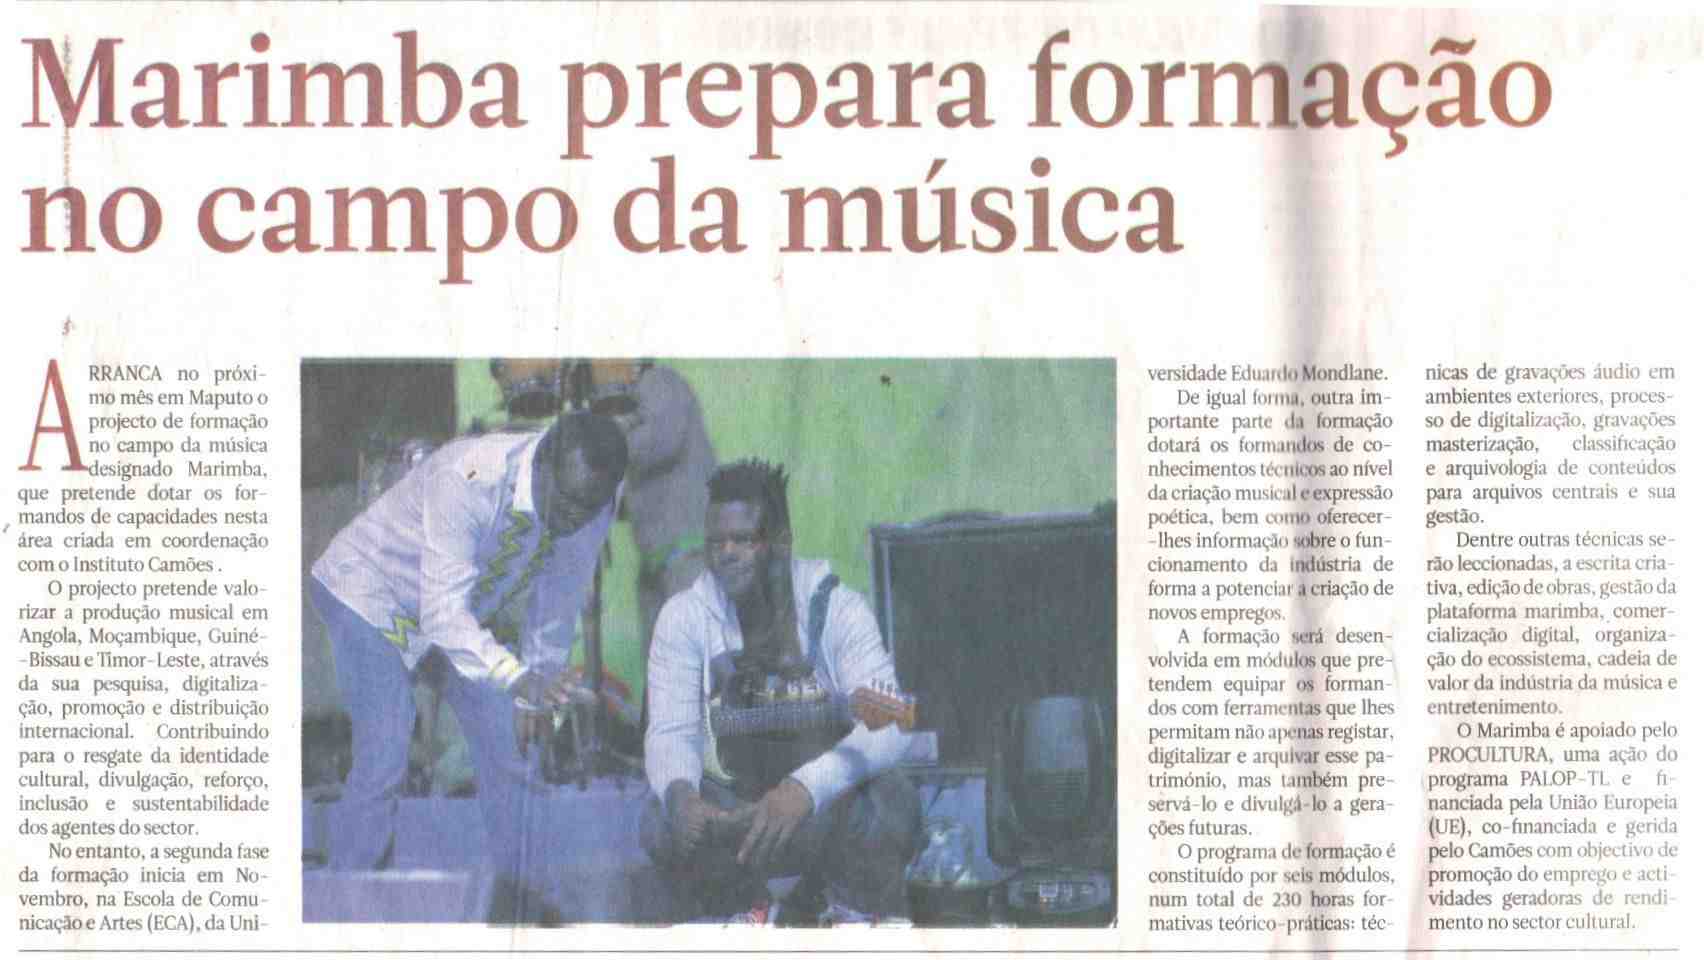 Jornal Noticias - Curso Formacao_page-0001.jpg